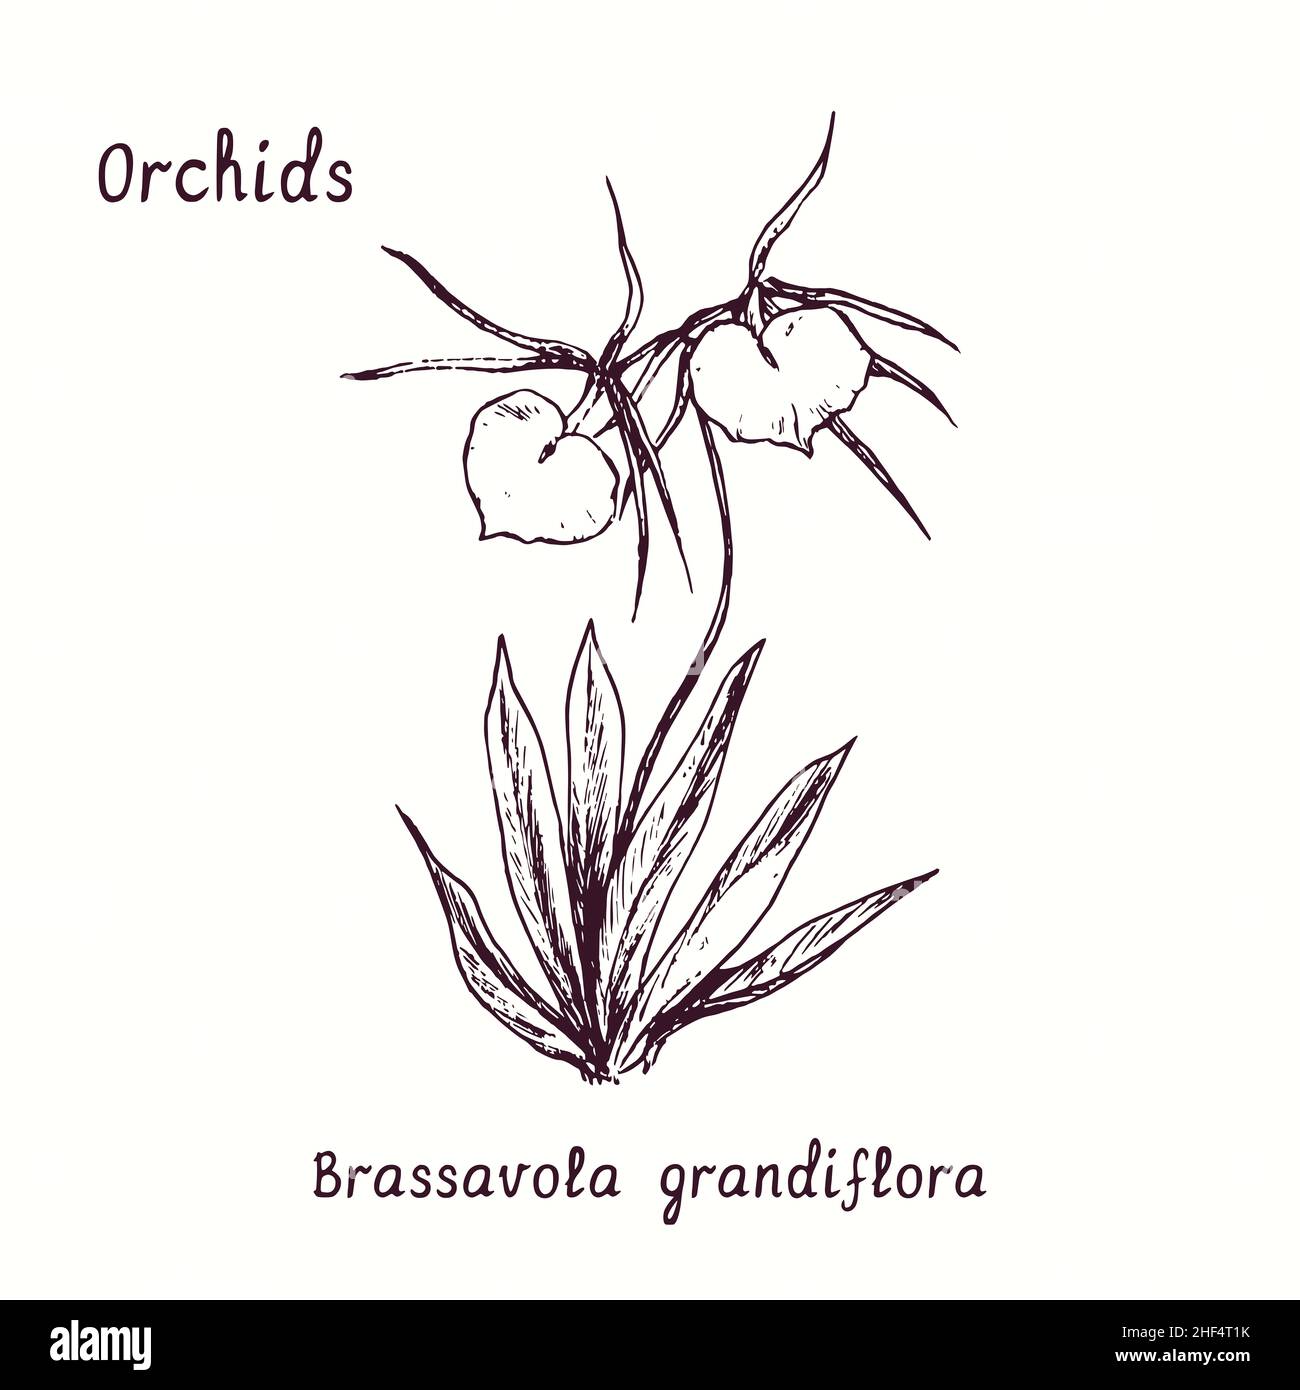 Collection de fleurs d'orchidées de Brassavola grandiflora (orchidée de la Dame de la nuit).Dessin d'une boisée noire et blanche avec inscription. Banque D'Images